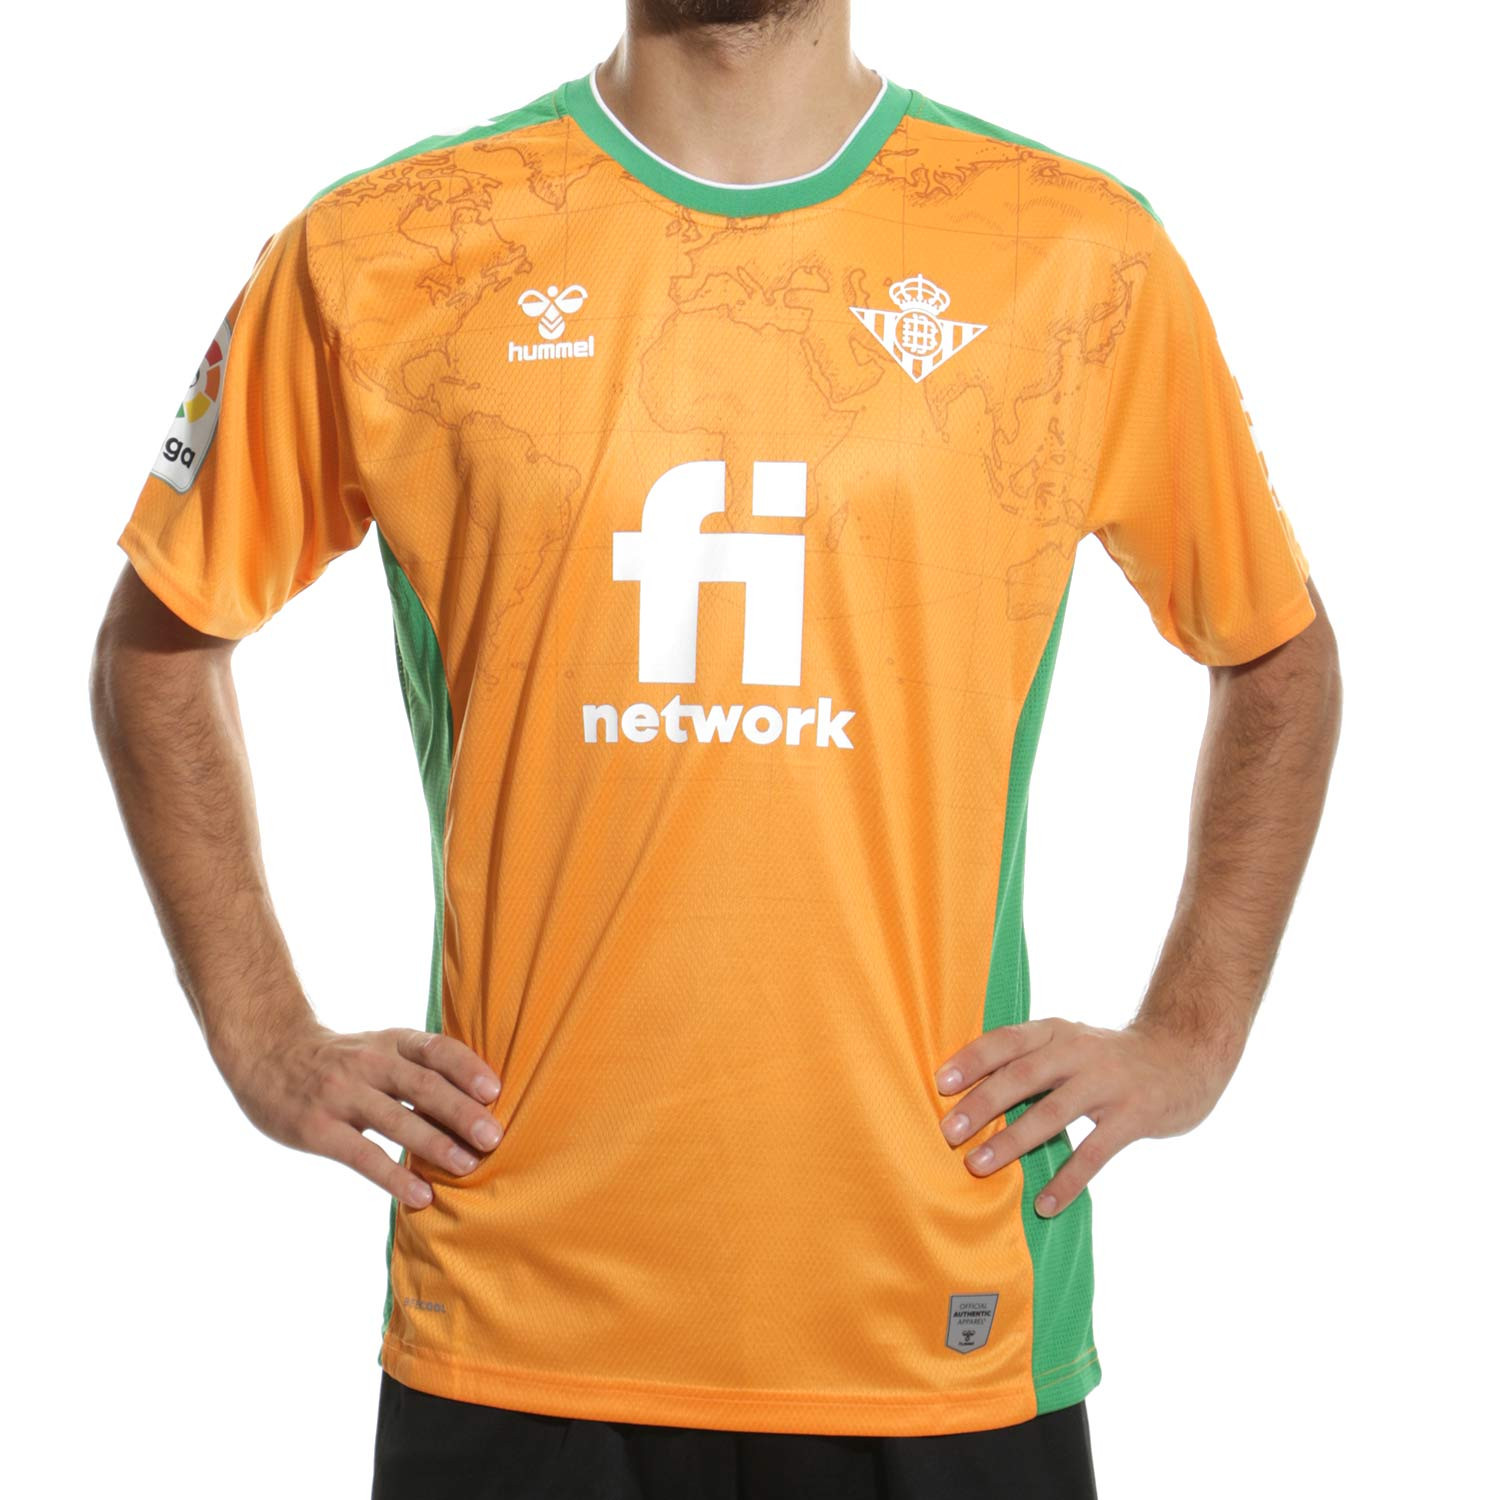 https://media.futbolmania.com/media/catalog/product/cache/1/image/0f330055bc18e2dda592b4a7c3a0ea22/2/1/216503-5097_camiseta-color-naranja-hummel-3a-real-betis-2022-2023_1_completa-frontal.jpg